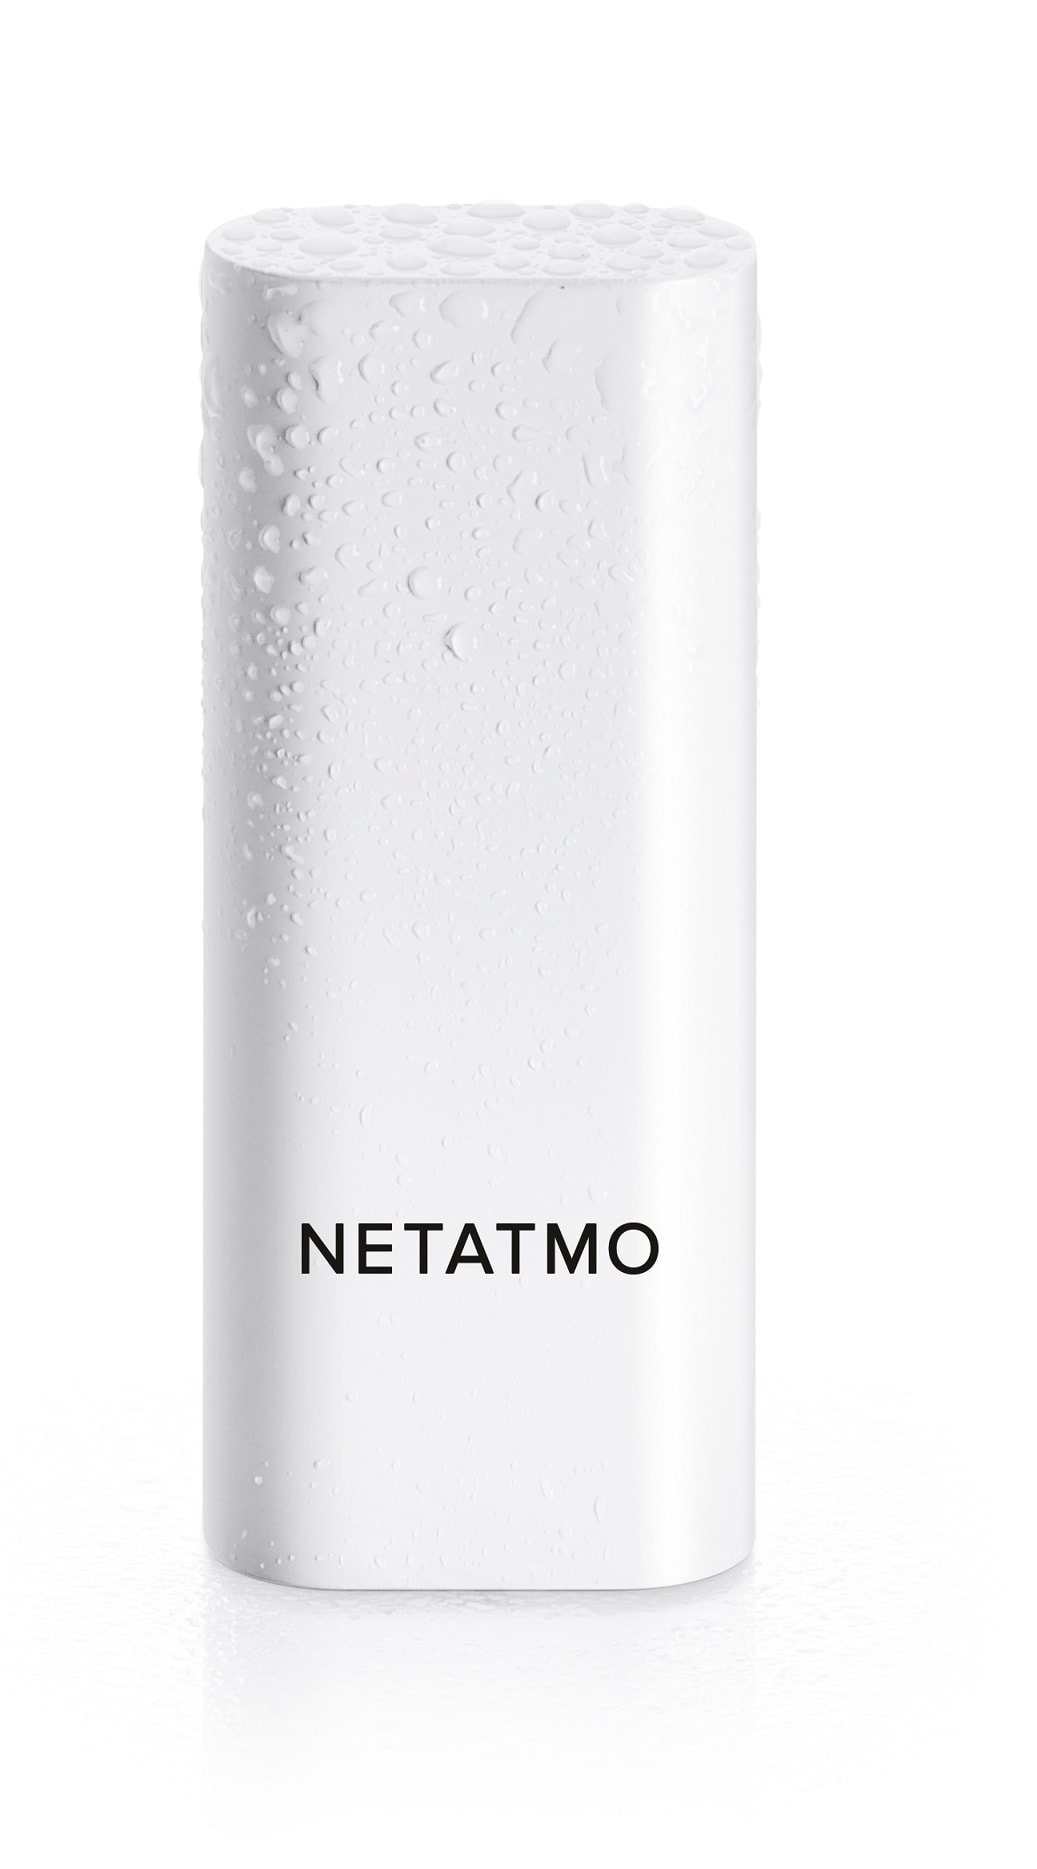 Le détecteur de fumée intelligent made by Netatmo est en promotion à -35 %